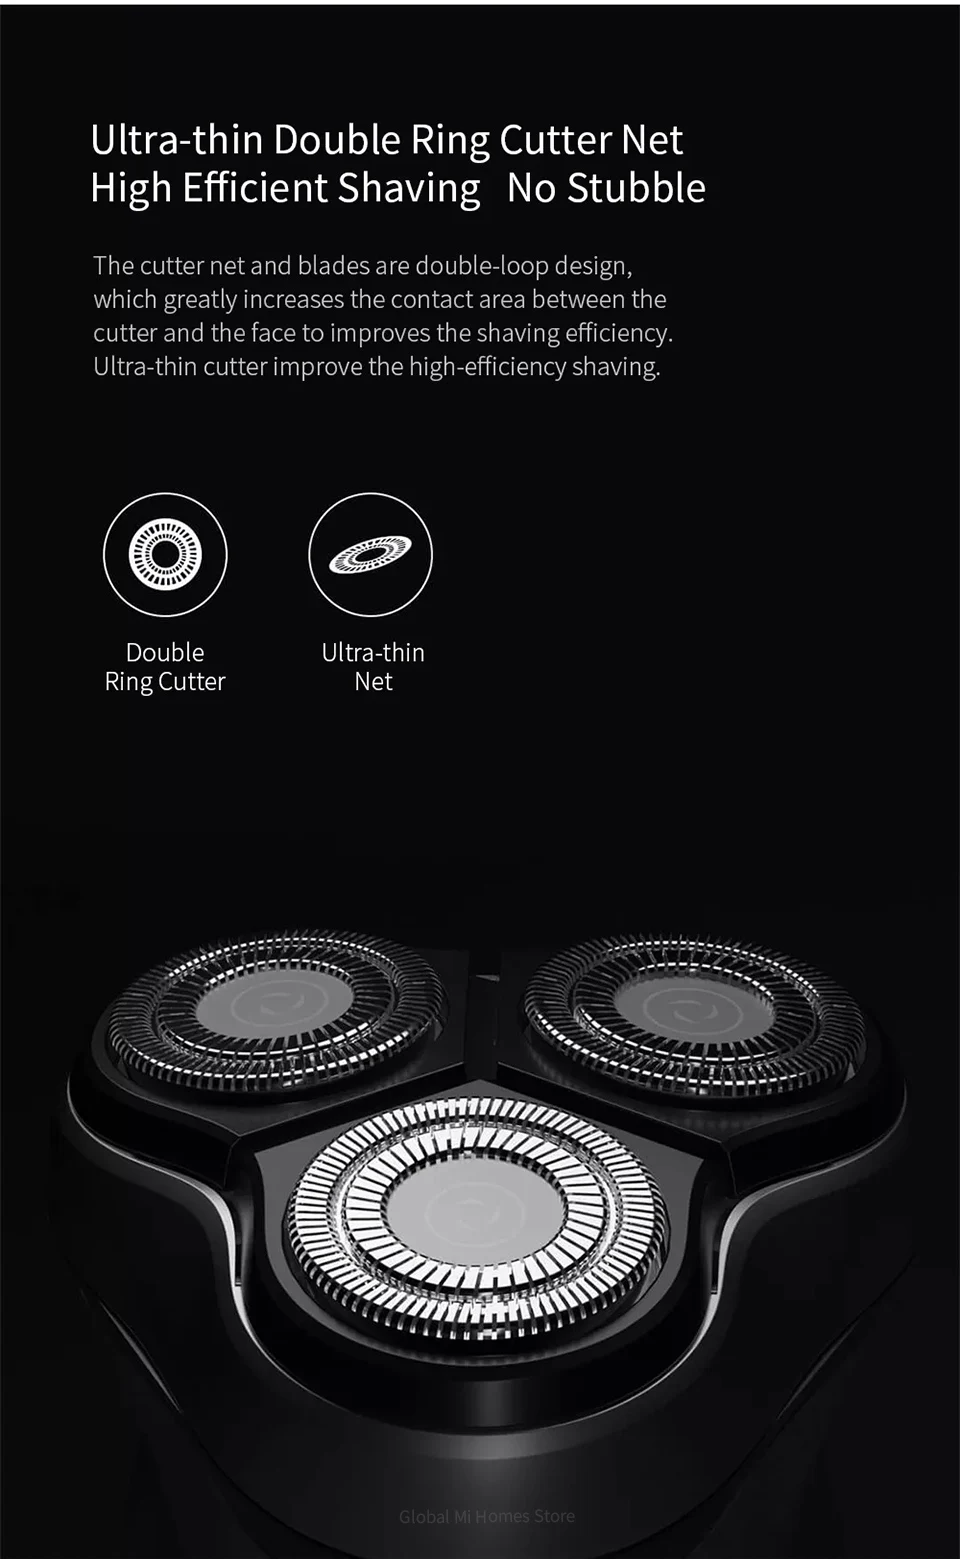 Xiaomi Enchen 3D электробритва с черным камнем для мужчин триммер для бороды Триммер для волос usb type-C перезаряжаемый бритвенный станок с одним лезвием